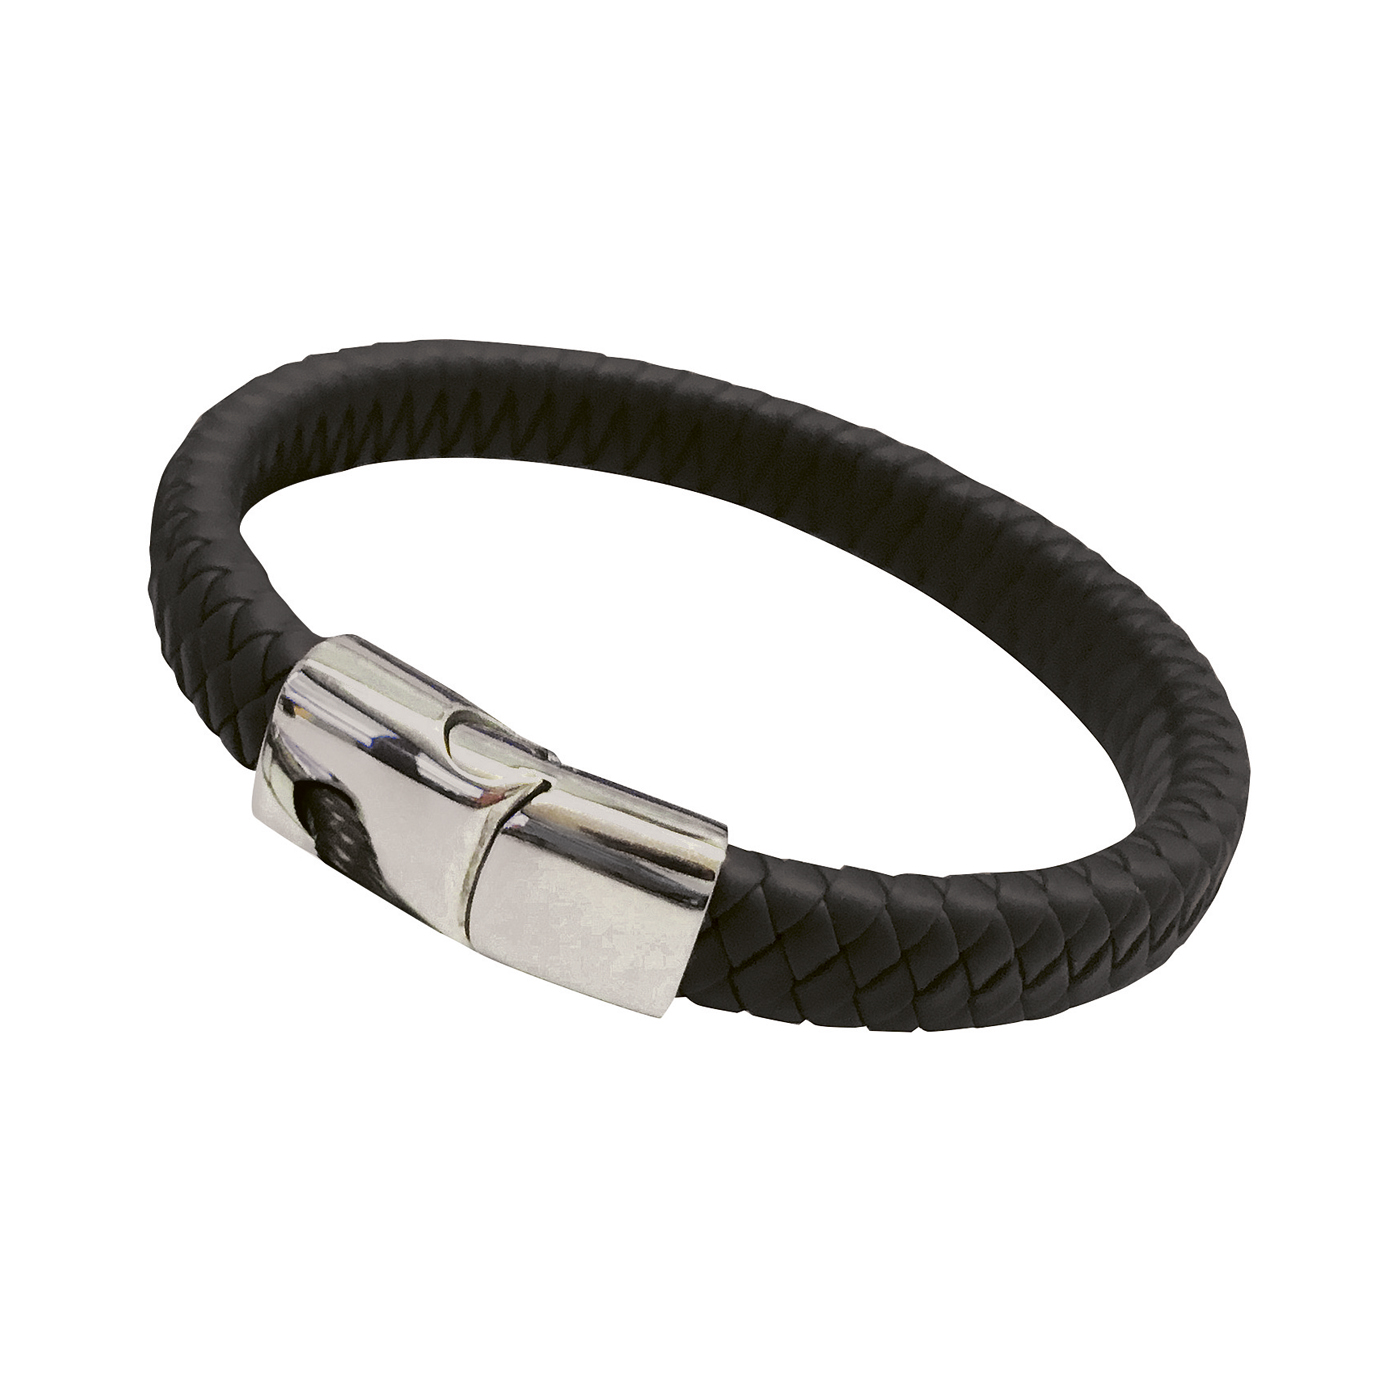 Caoutchouc Bracelet, Black, Length 21 cm - 1 piece